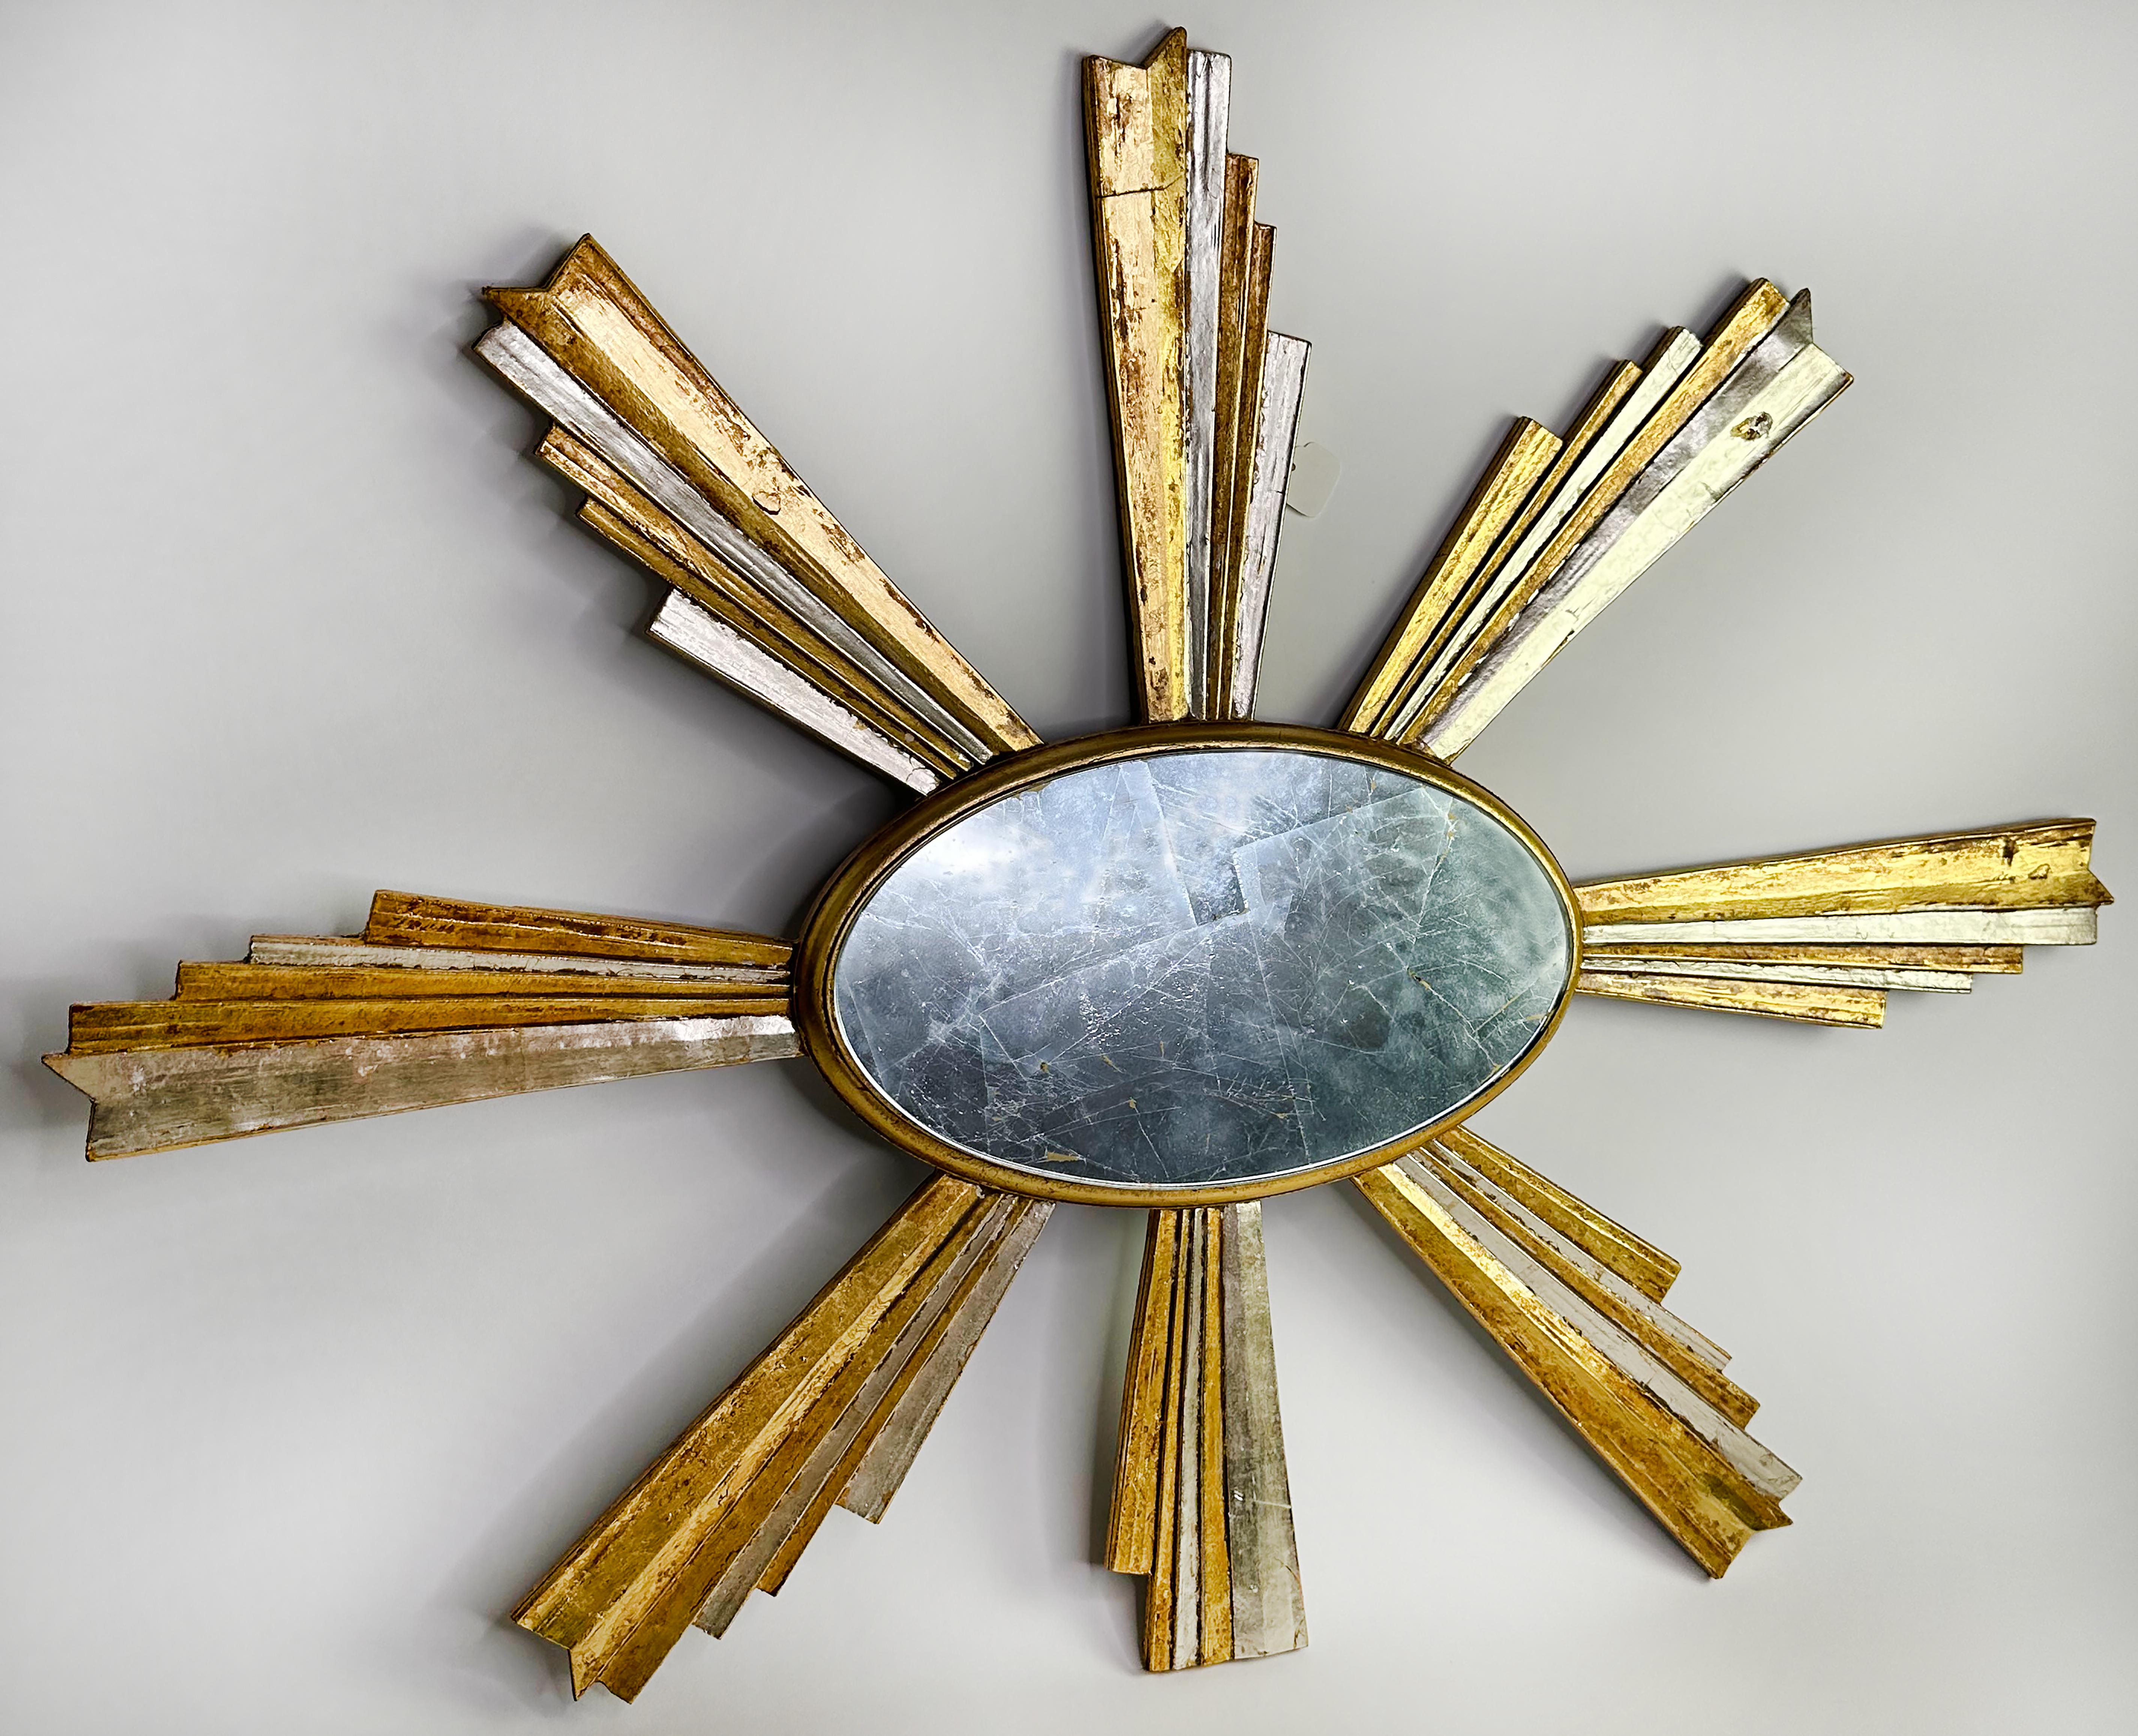 Un élégant miroir mural en bois doré avec cadre ovale en forme de soleil. Réalisé entre la fin des années 1990 et le début des années 2000. Créé dans un style Art déco.

En bon état. Une légère usure due à l'âge et à l'utilisation. Cet objet unique